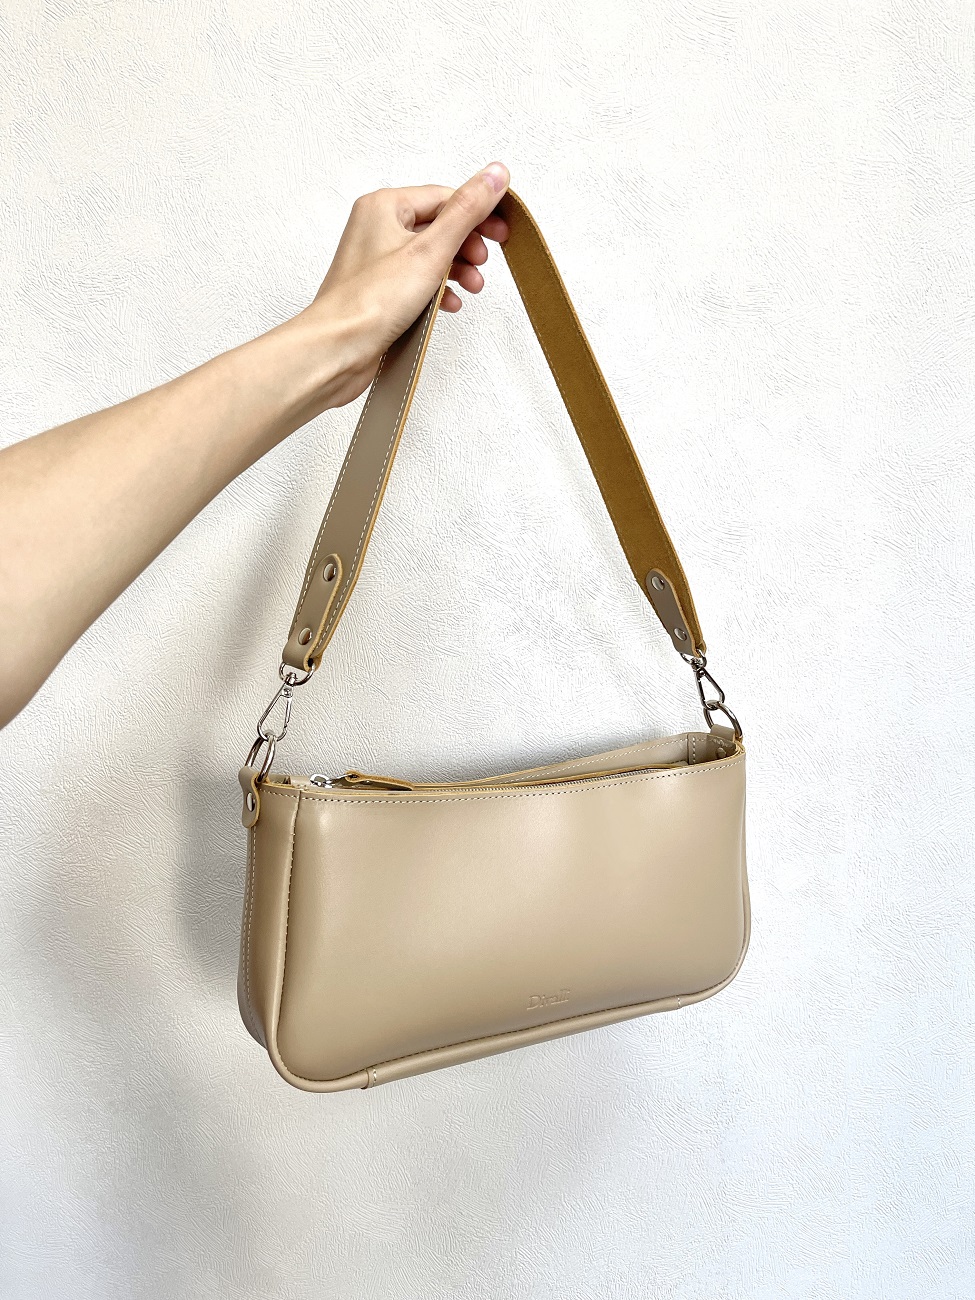 Женская кожаная сумка-багет бежевая A041 beige